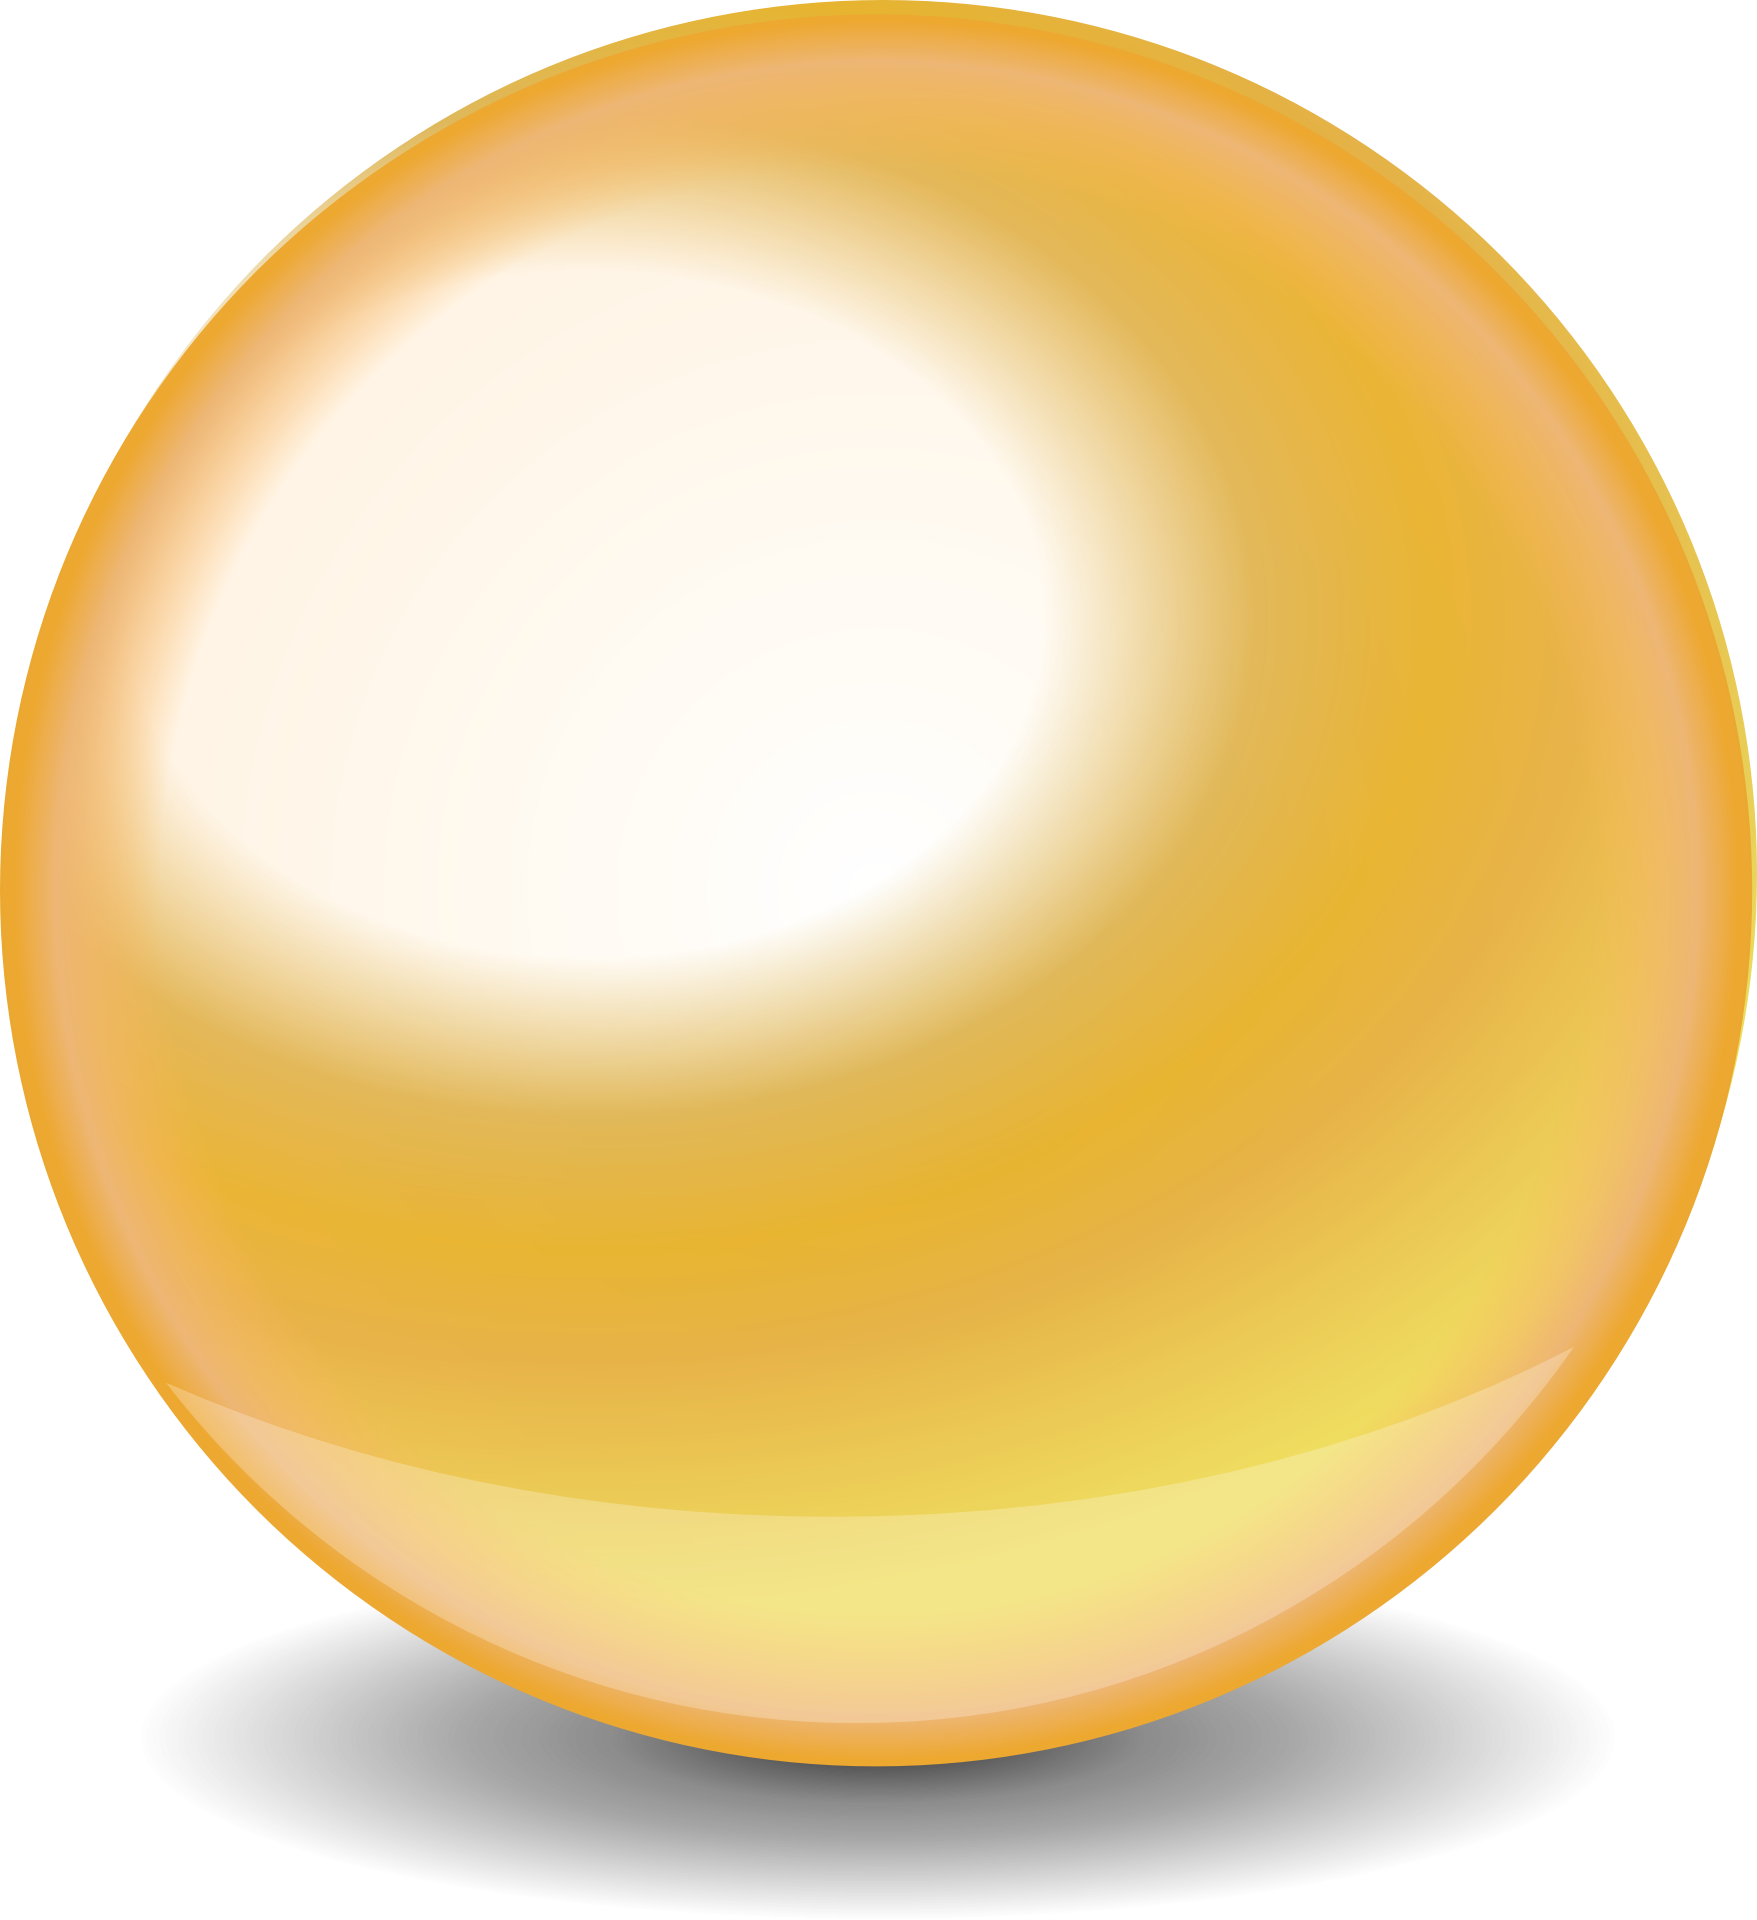 Золотой шар. Голд бол (Gold Ball). Золотая сфера на белом фоне. Шар без фона. Объемный круг.